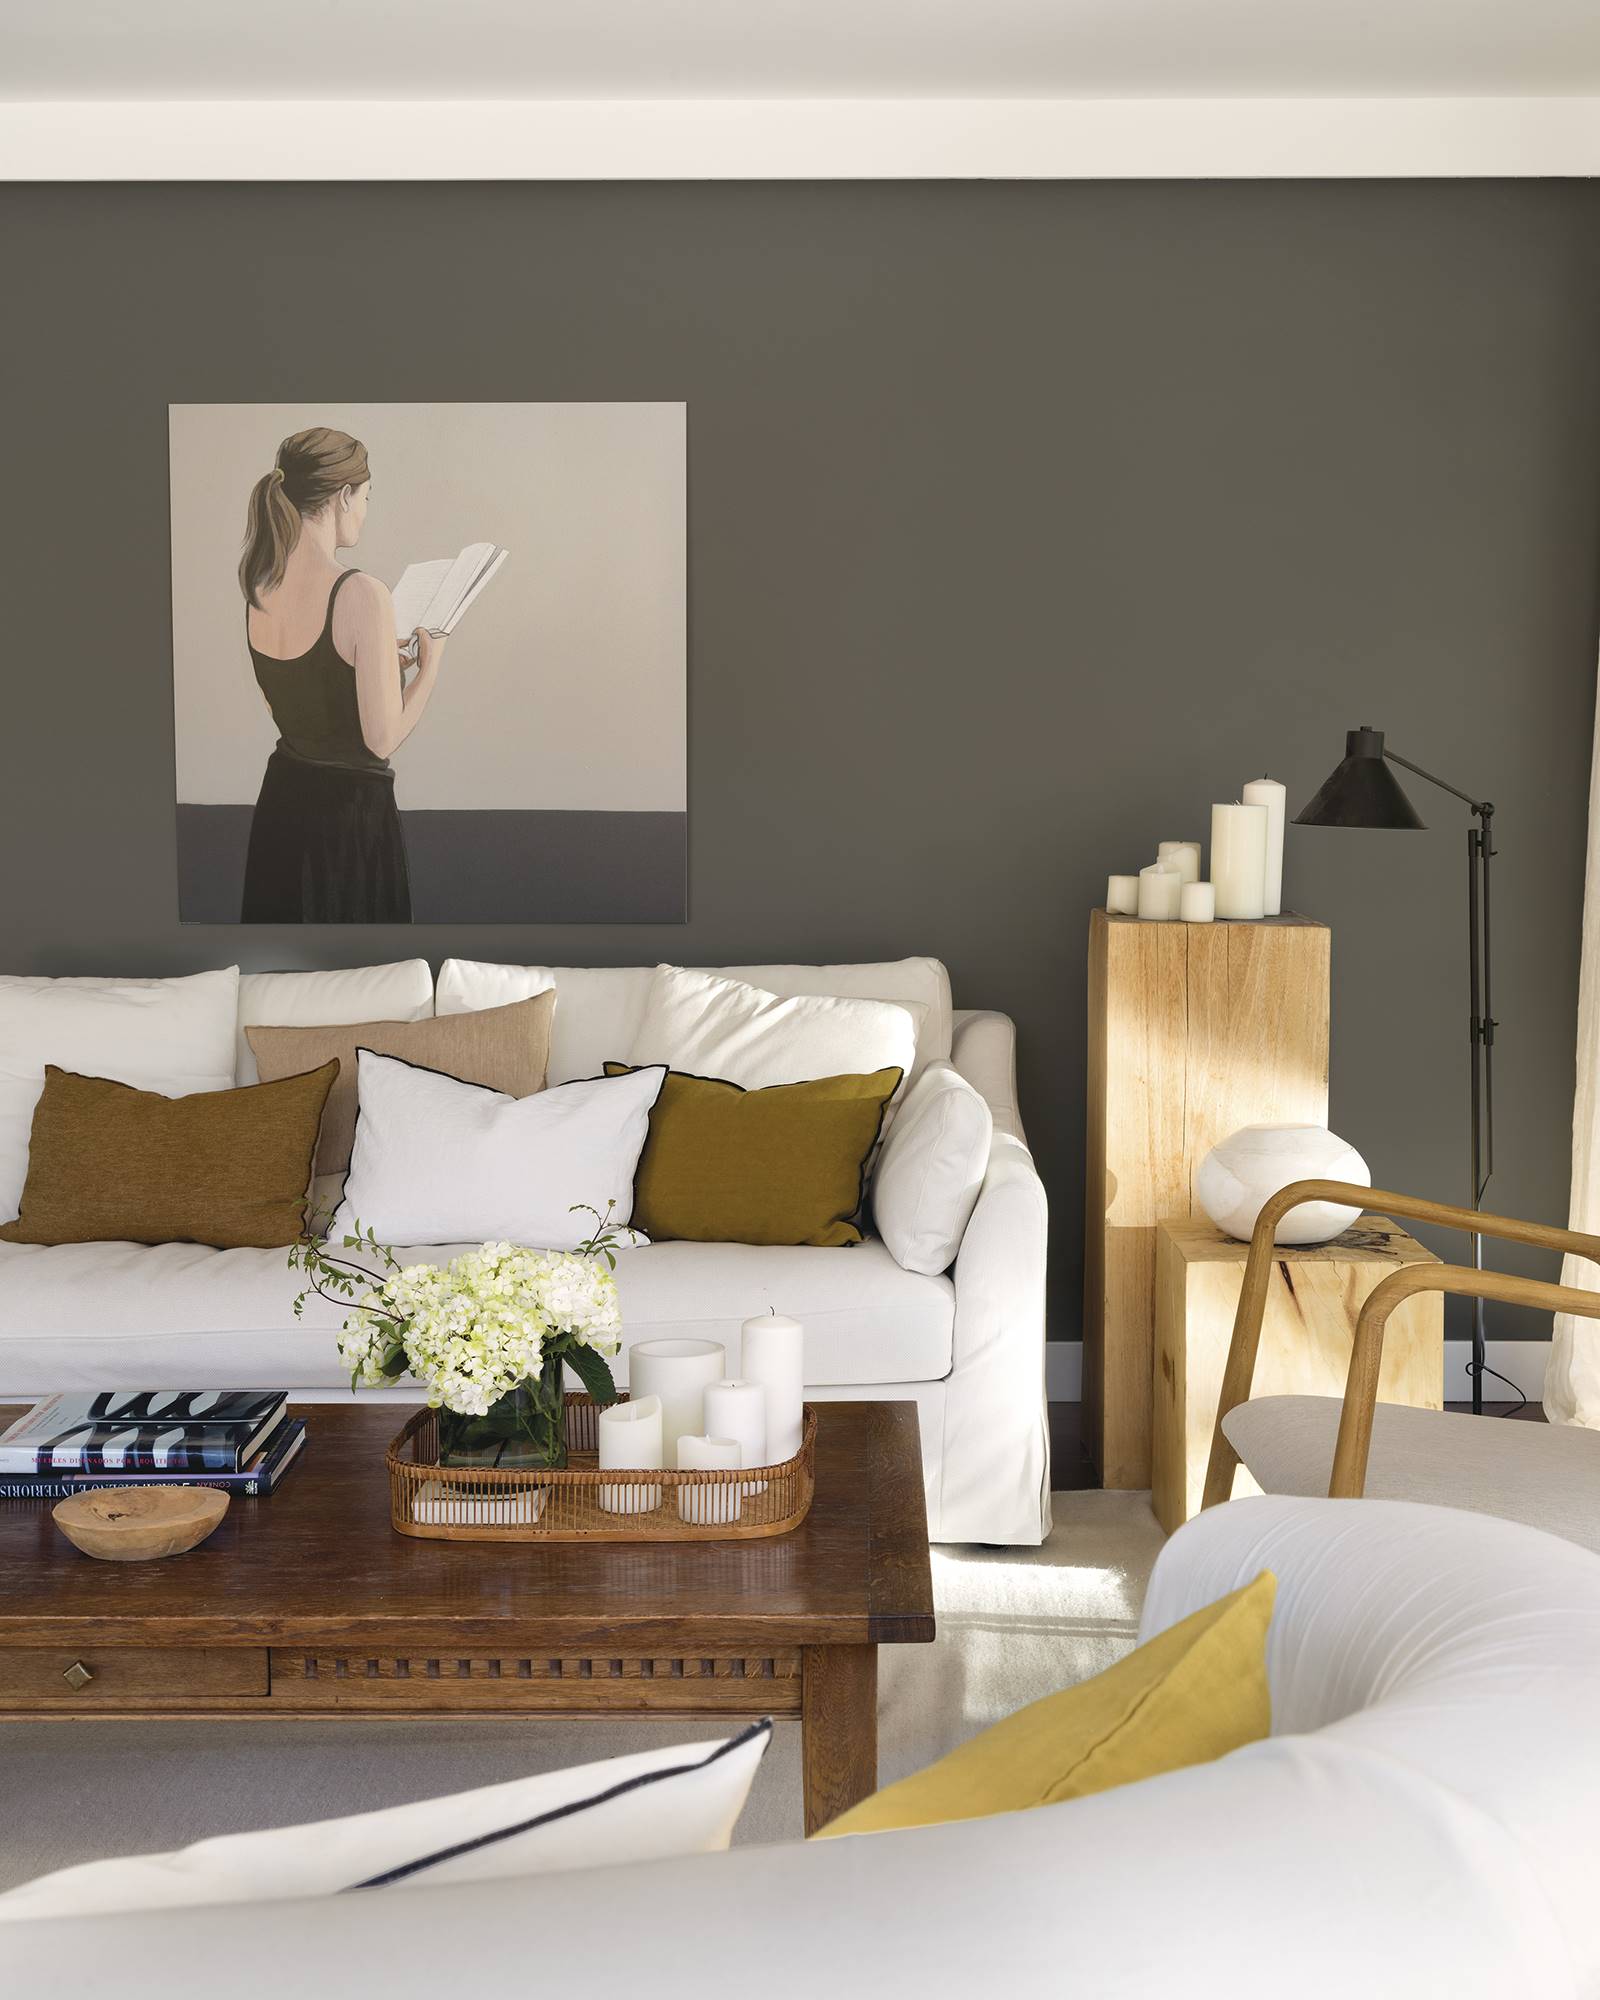 Sofá blanco con textiles en marrón y pared pintada de gris oscuro con cuadro de una mujer de la casa de Paula Duarte.